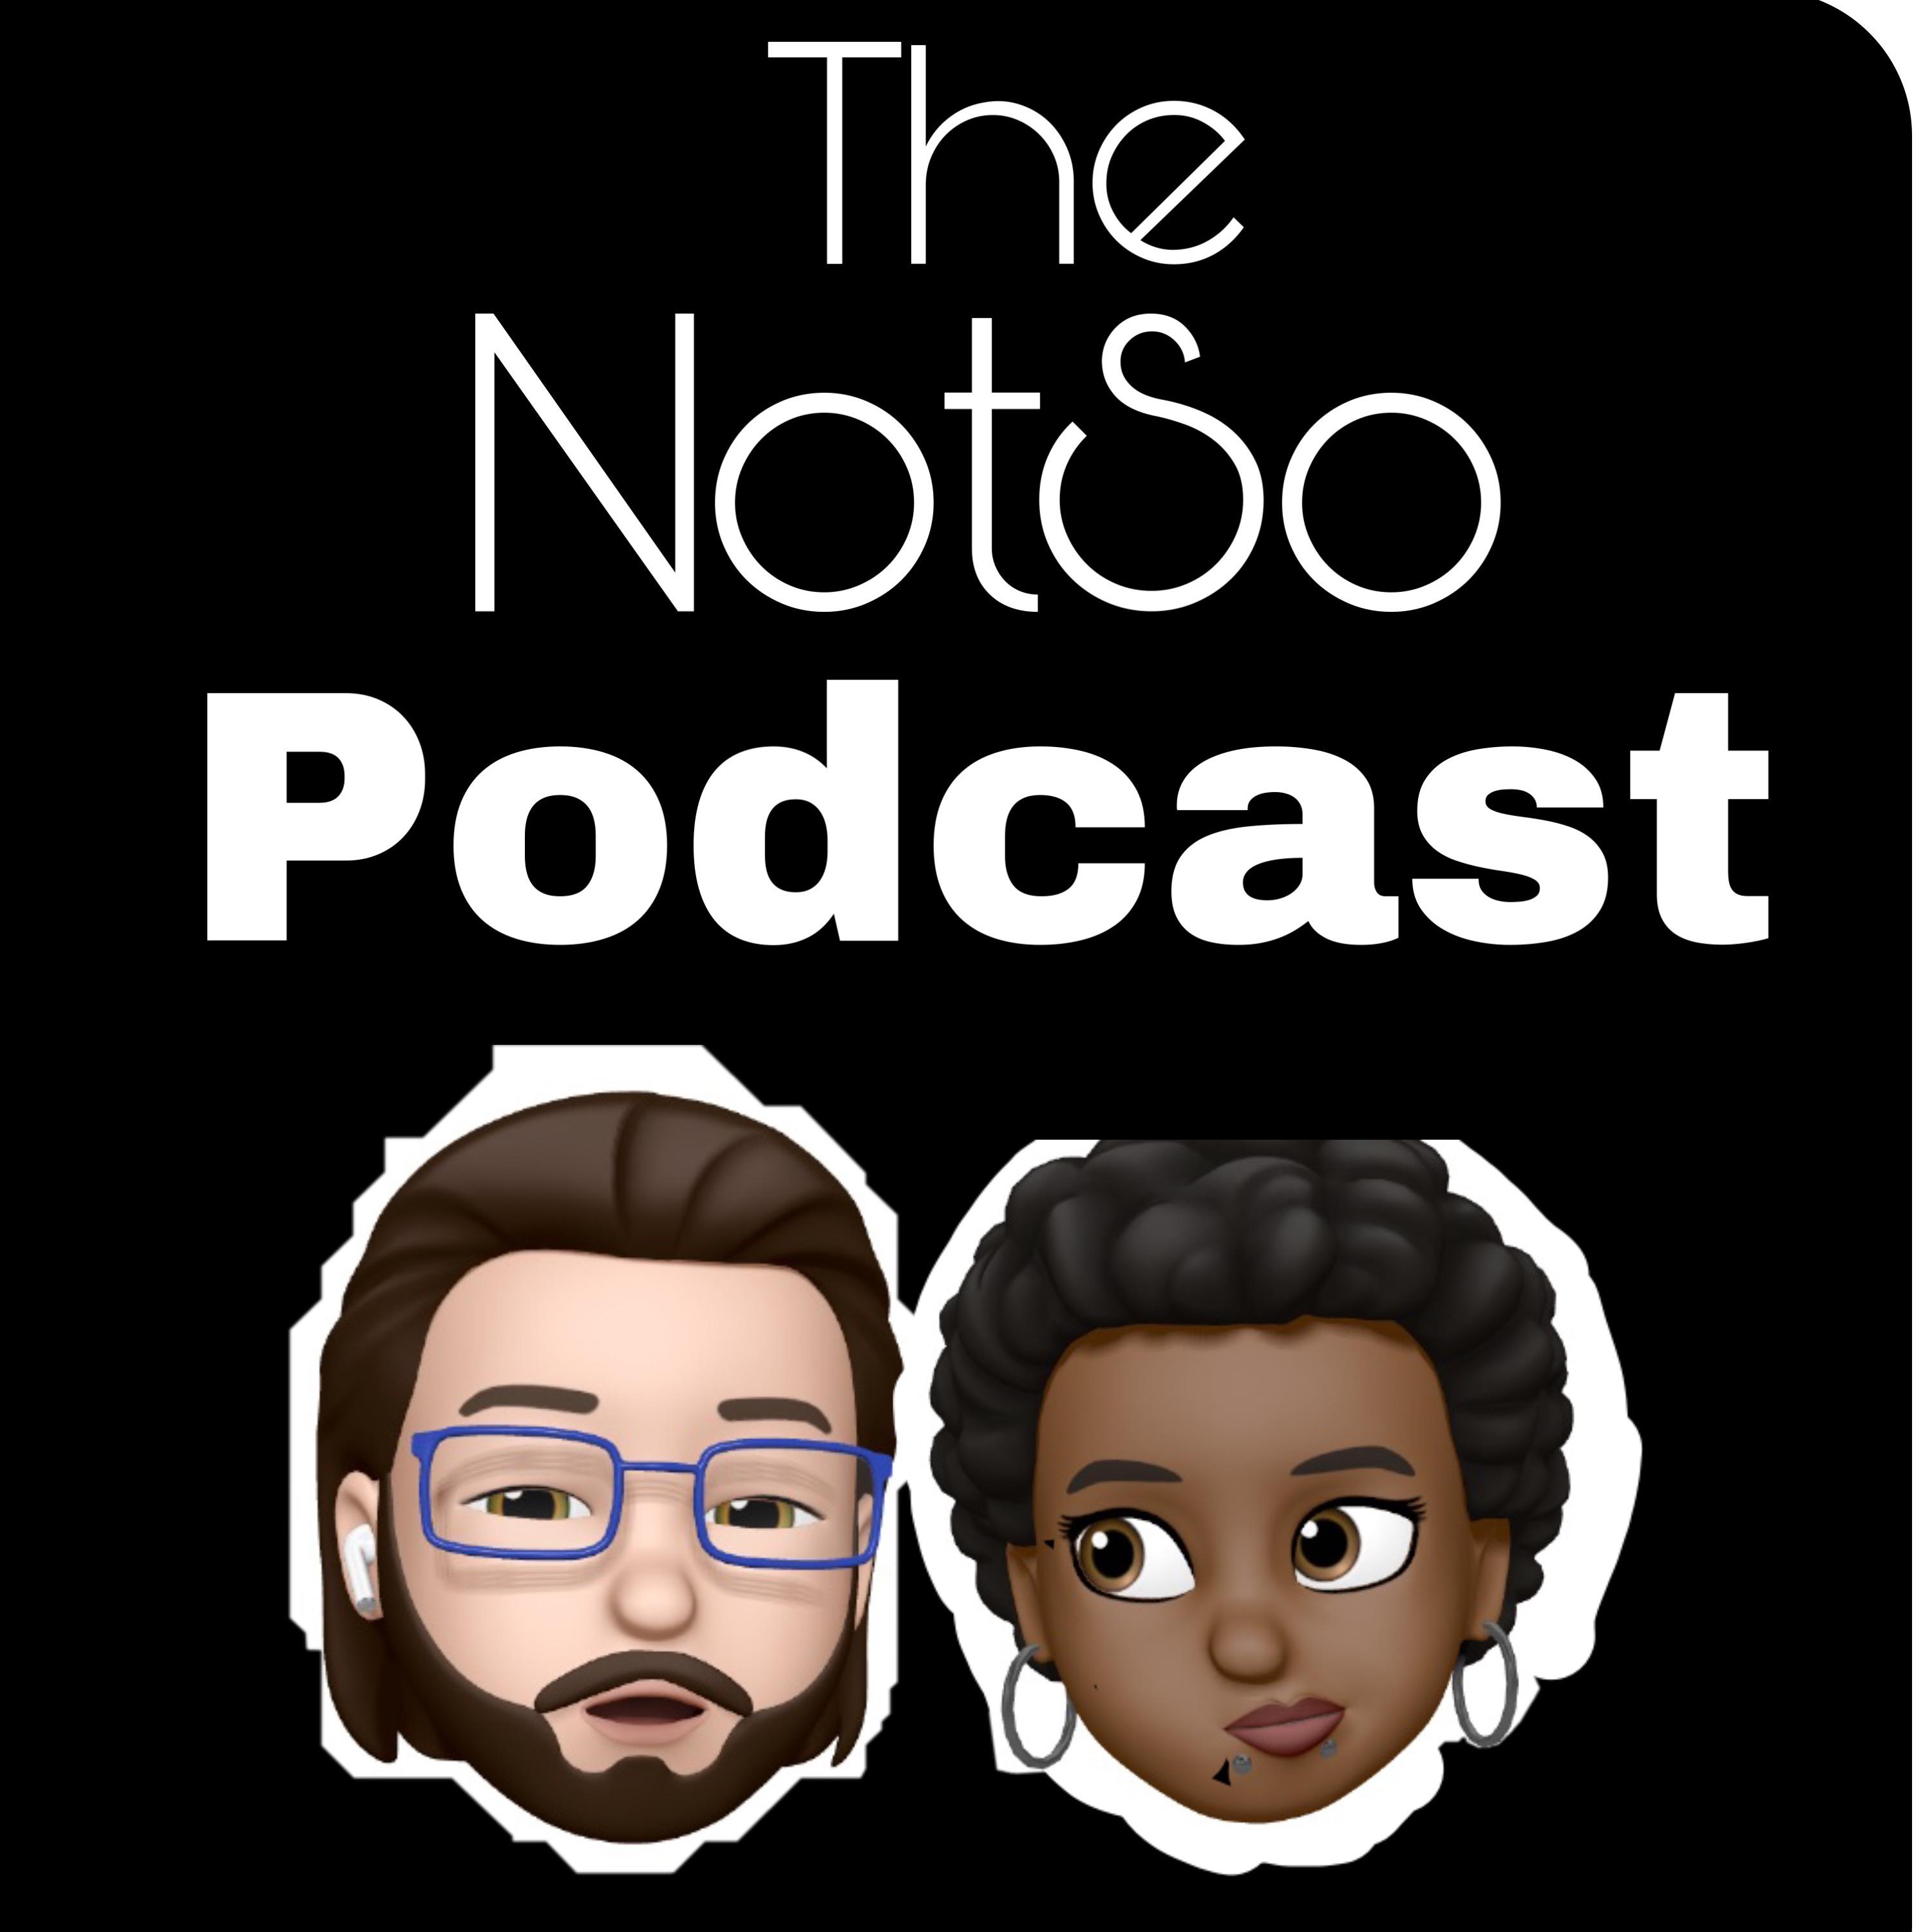 The NotSoPodcast